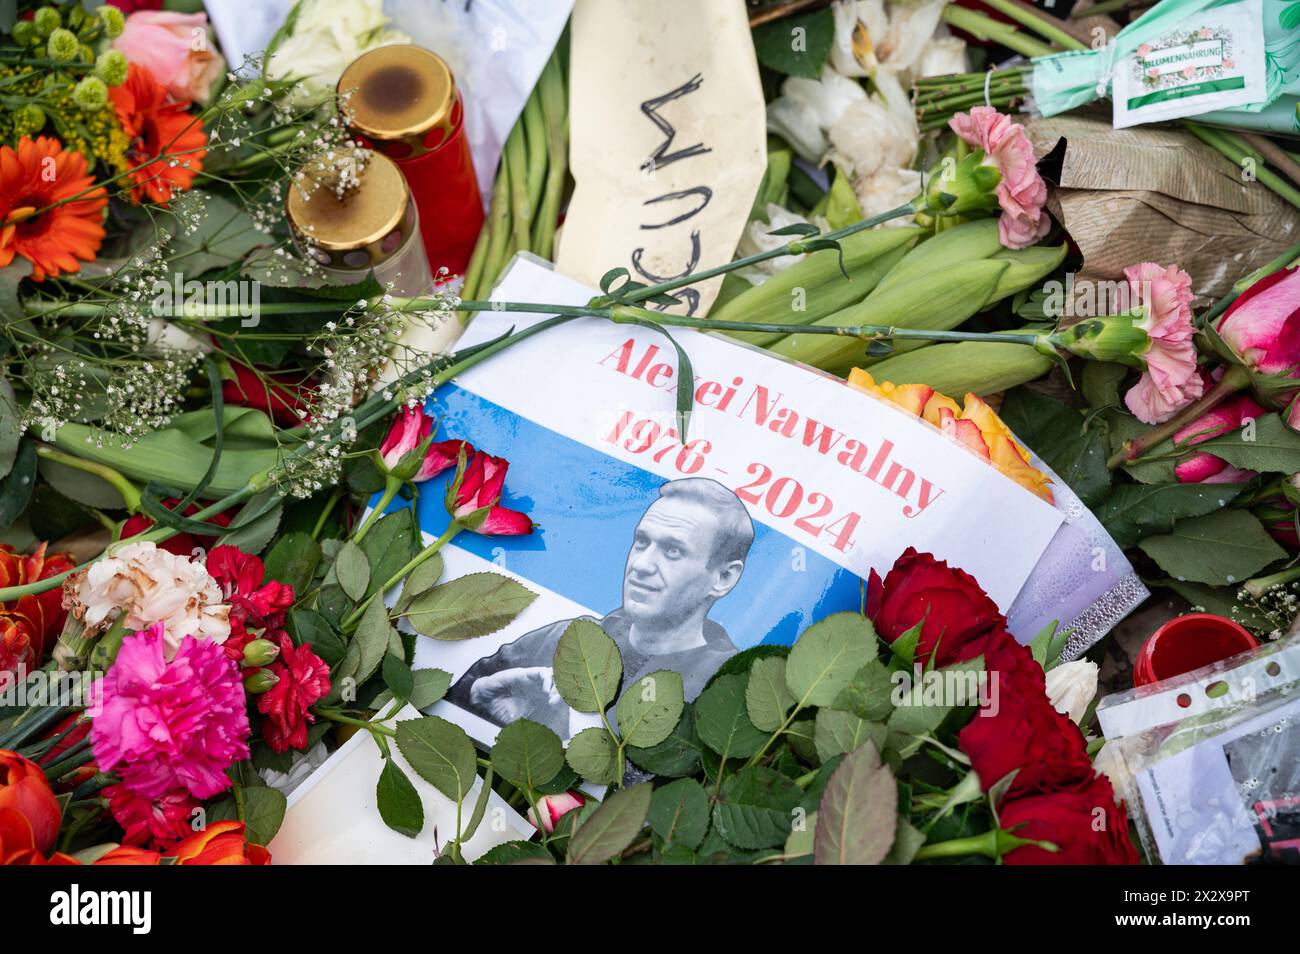 24.02.2024, Berlin, , Allemagne - Europe - un mémorial improvisé fait de fleurs, de bougies et d'images pour le chef de l'opposition russe Alexei Navalny Banque D'Images